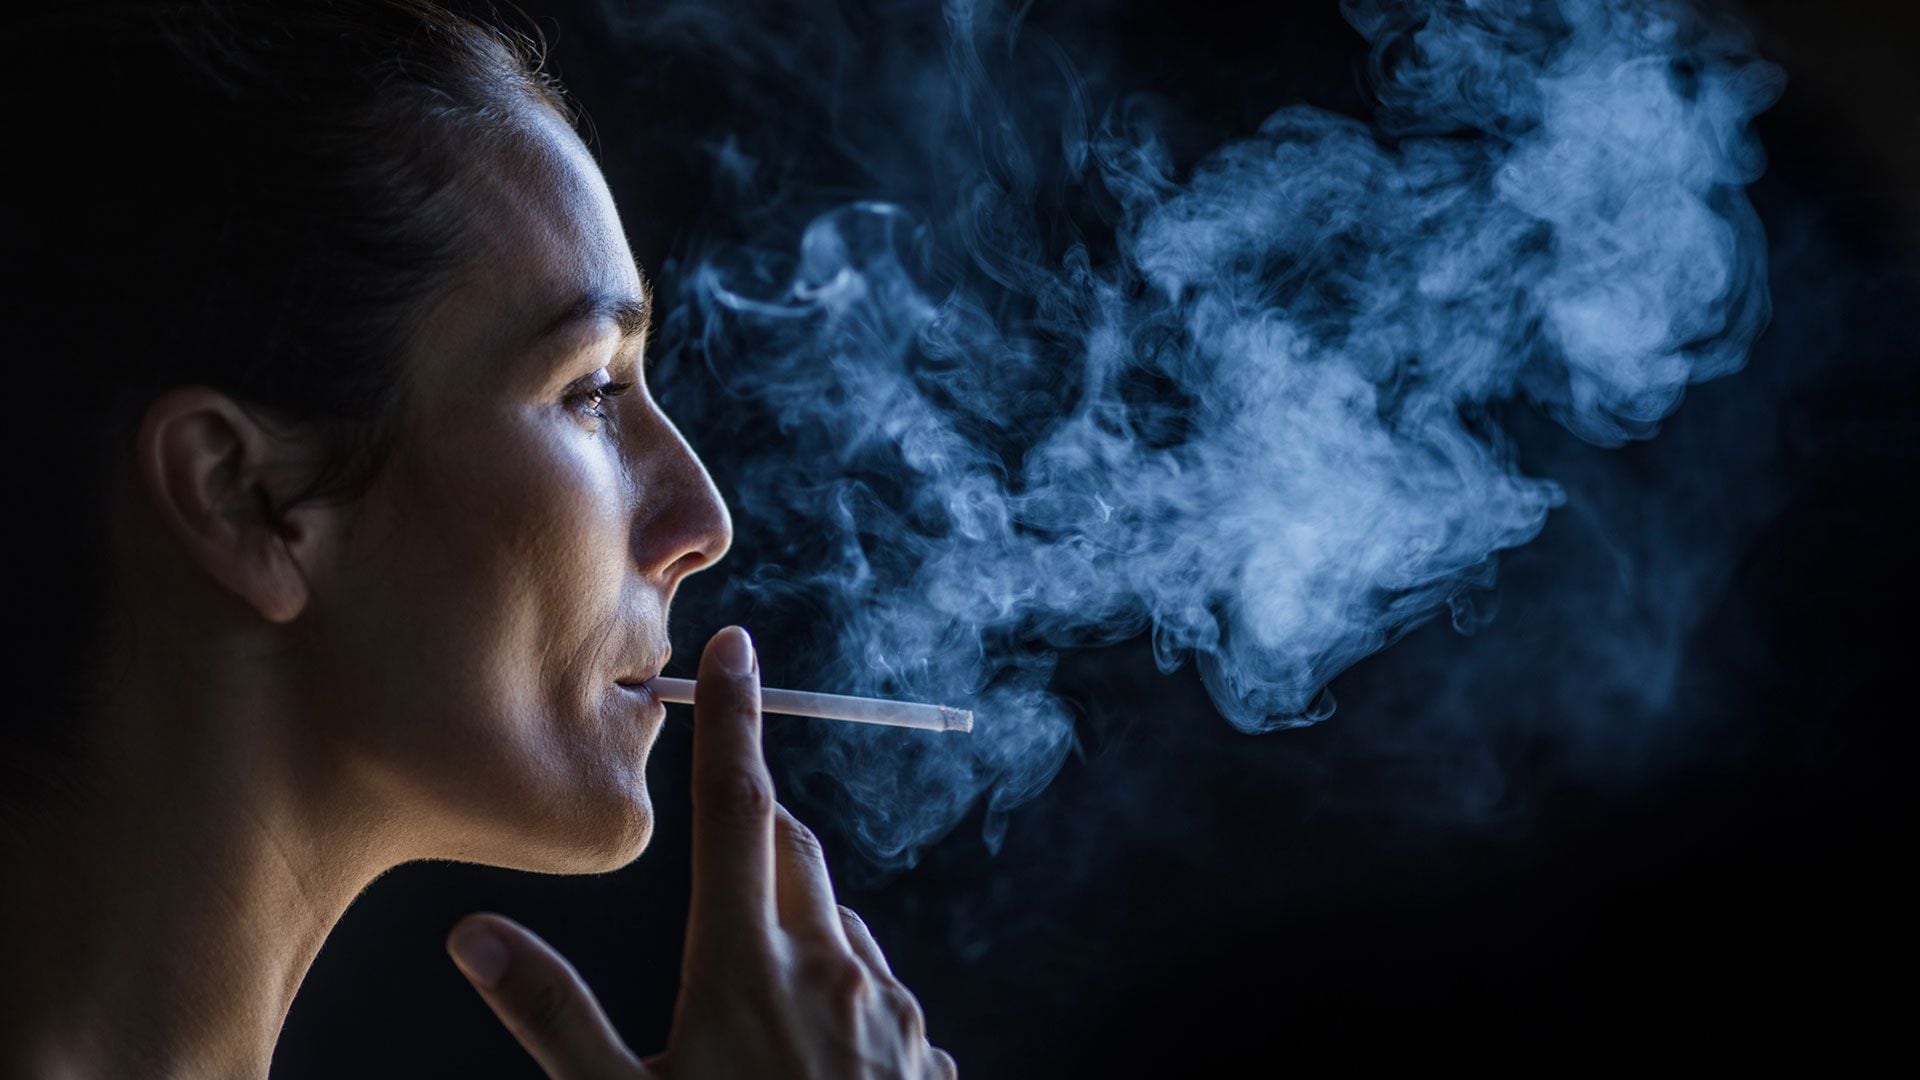 Si bien las cajas de cigarrillos muestran advertencias sobre enfermedades pulmonares y otros problemas de salud, aún es necesario tomar conciencia de la conexión entre el tabaquismo y las enfermedades mentales (Getty)